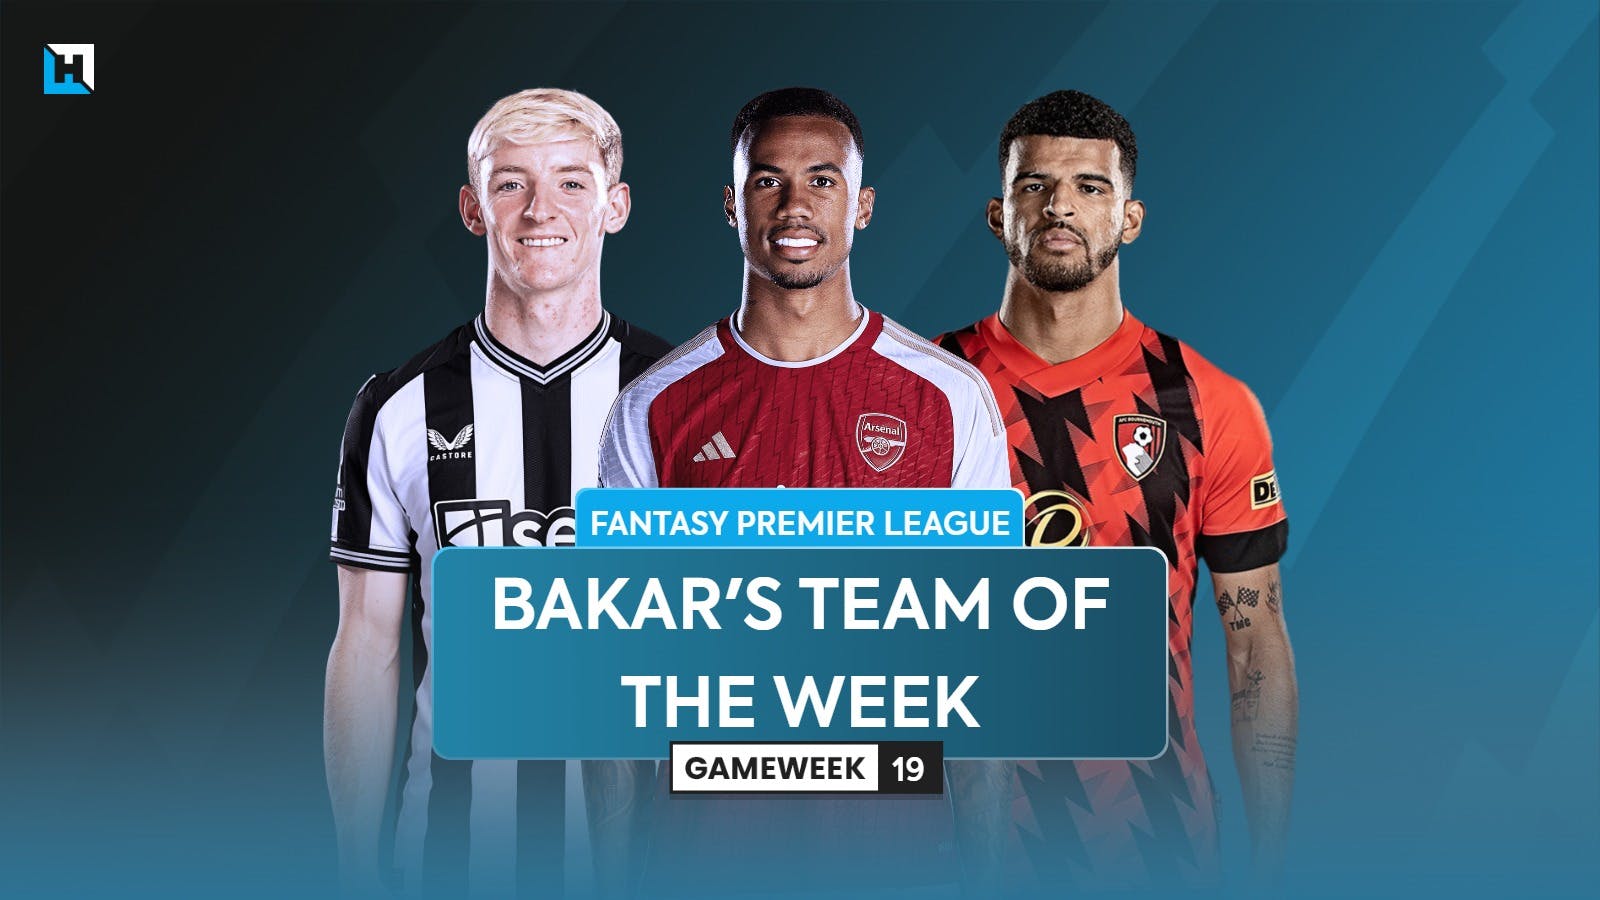 Bakar’s FPL team of the week for Gameweek 19